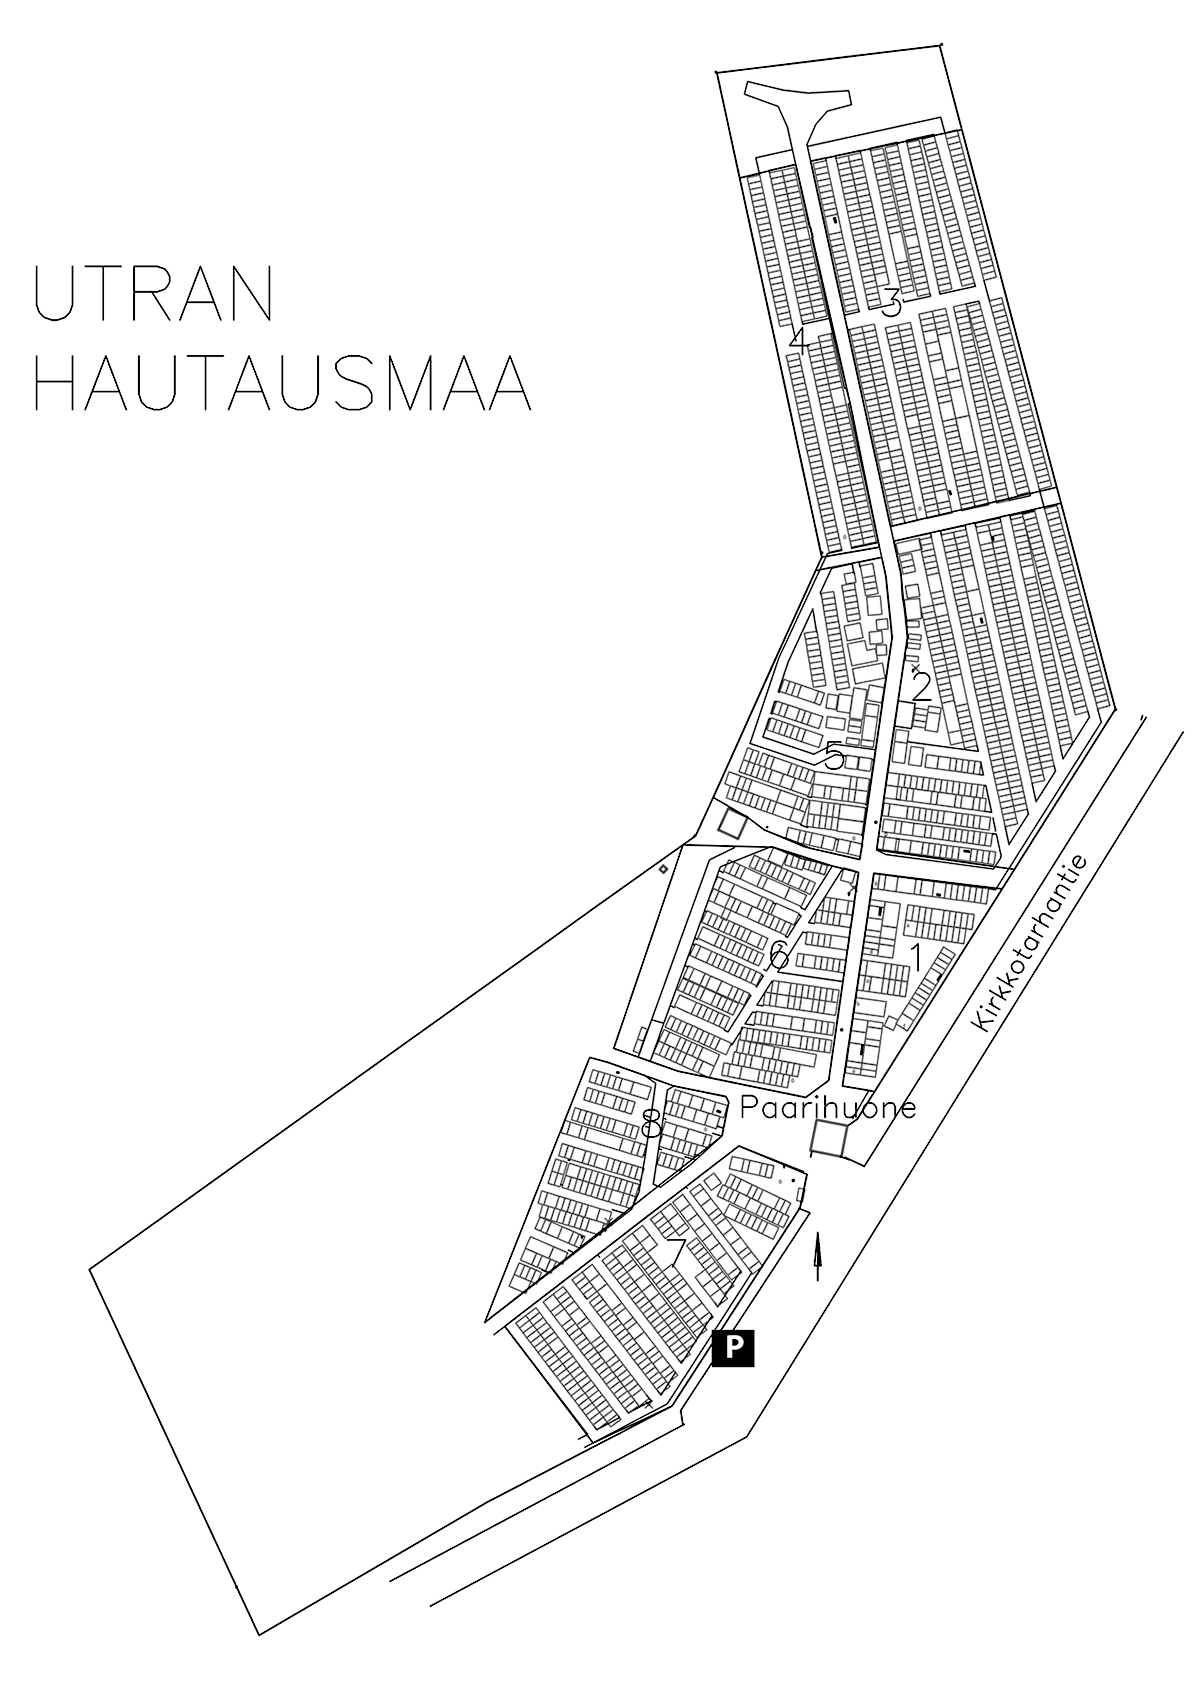 Karttakuva Utran hautausmaan eri lohkoista.